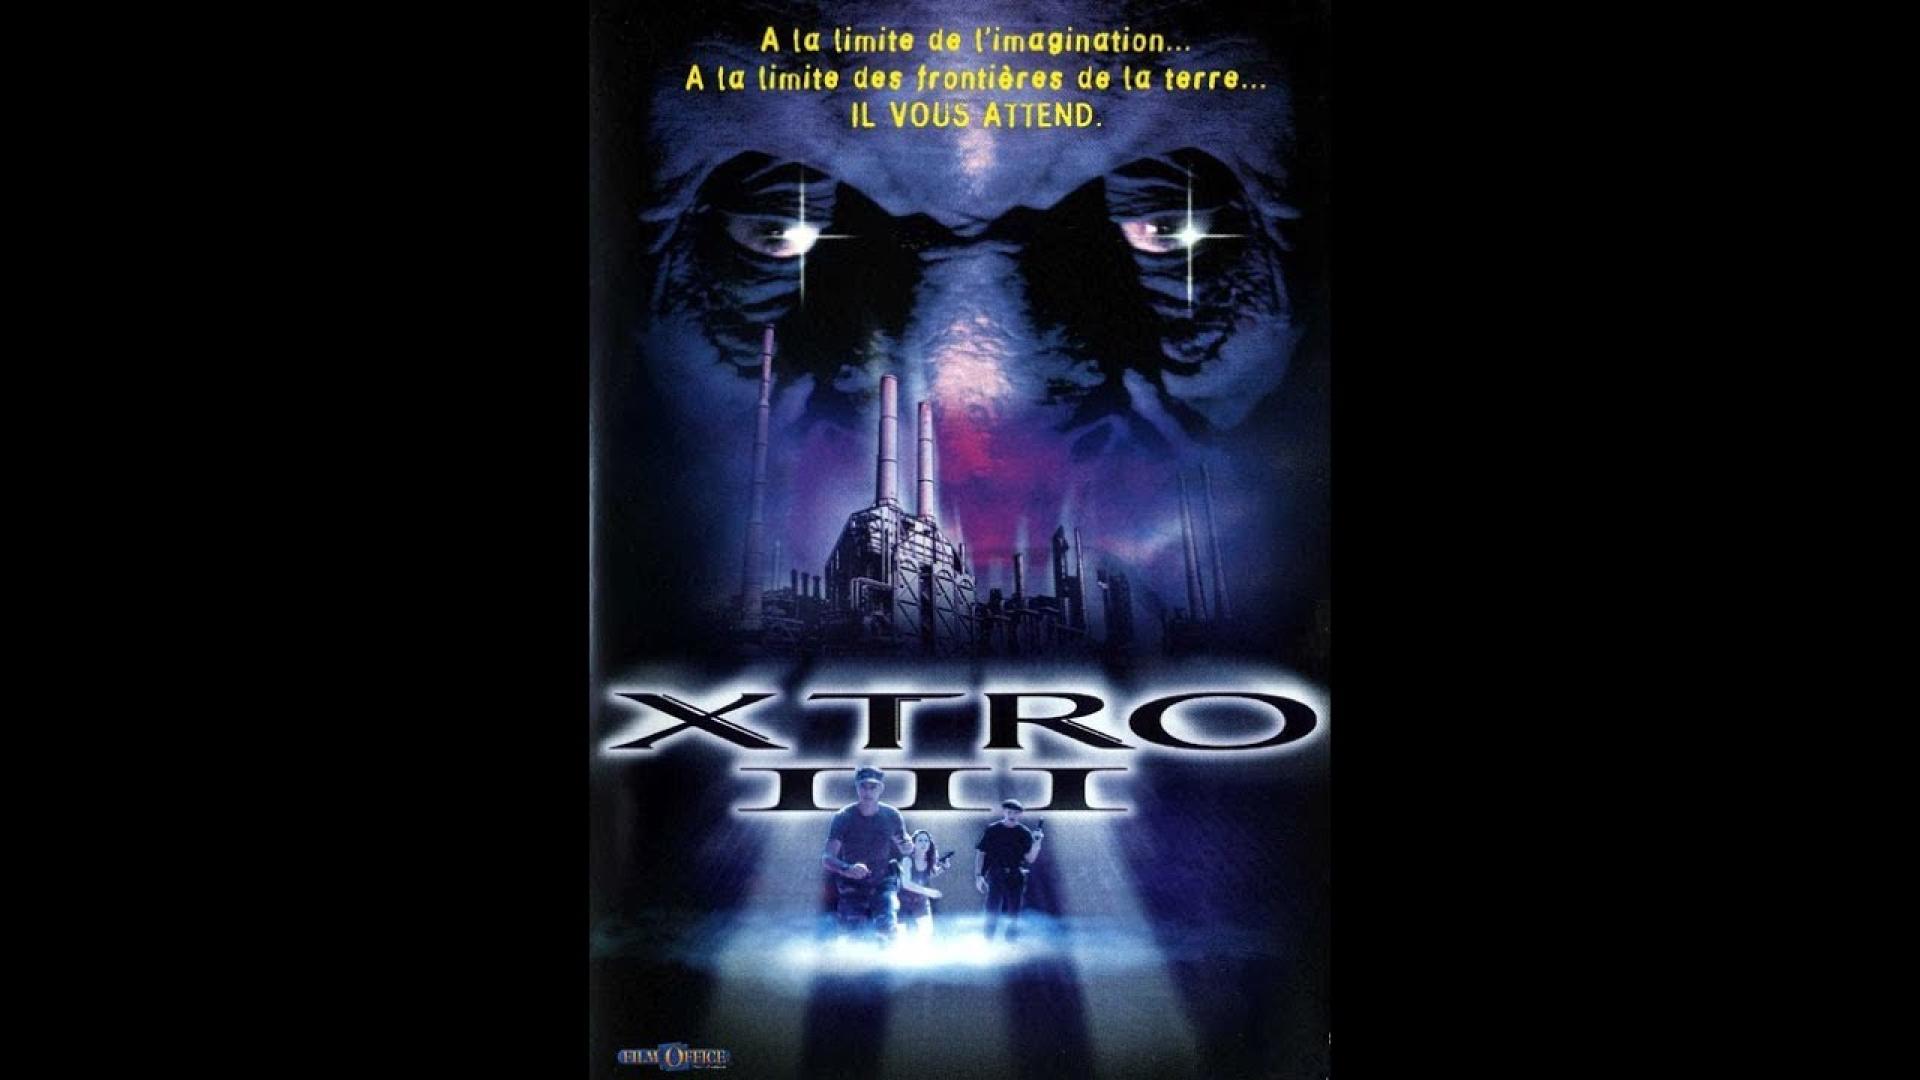 Xtro 3: Watch the Skies / XTRO 3: Folytatódik a rettegés